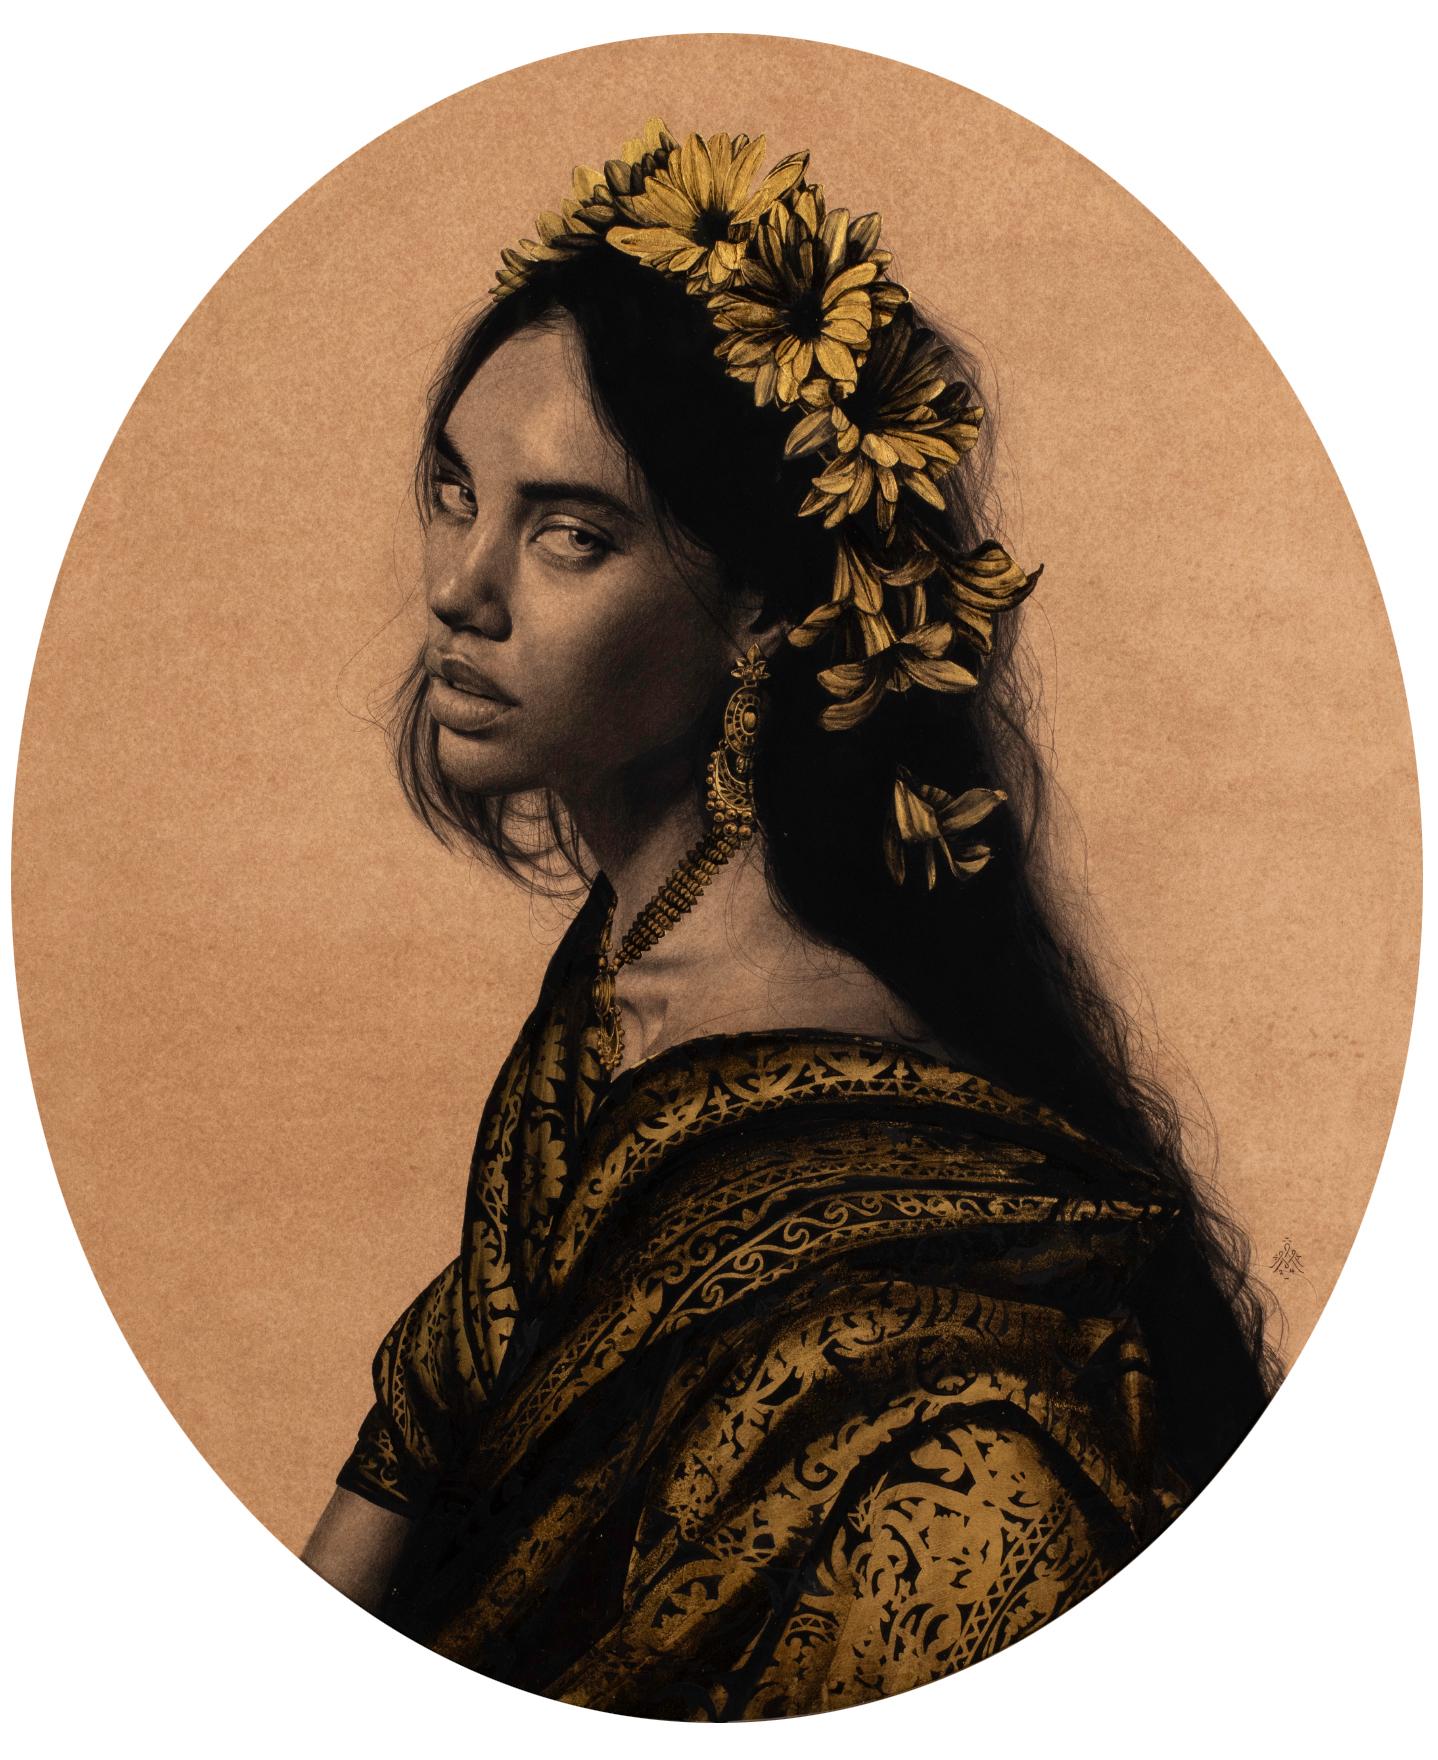 Alessandra Maria arbeitet mit einer Palette aus Graphit und Blattgold und verwebt meisterhaft Elemente des Irdischen und des Ätherischen miteinander. Sie ist teils Zauberin, teils Alchemistin, beschwört die Gegenwart aus der Vergangenheit und